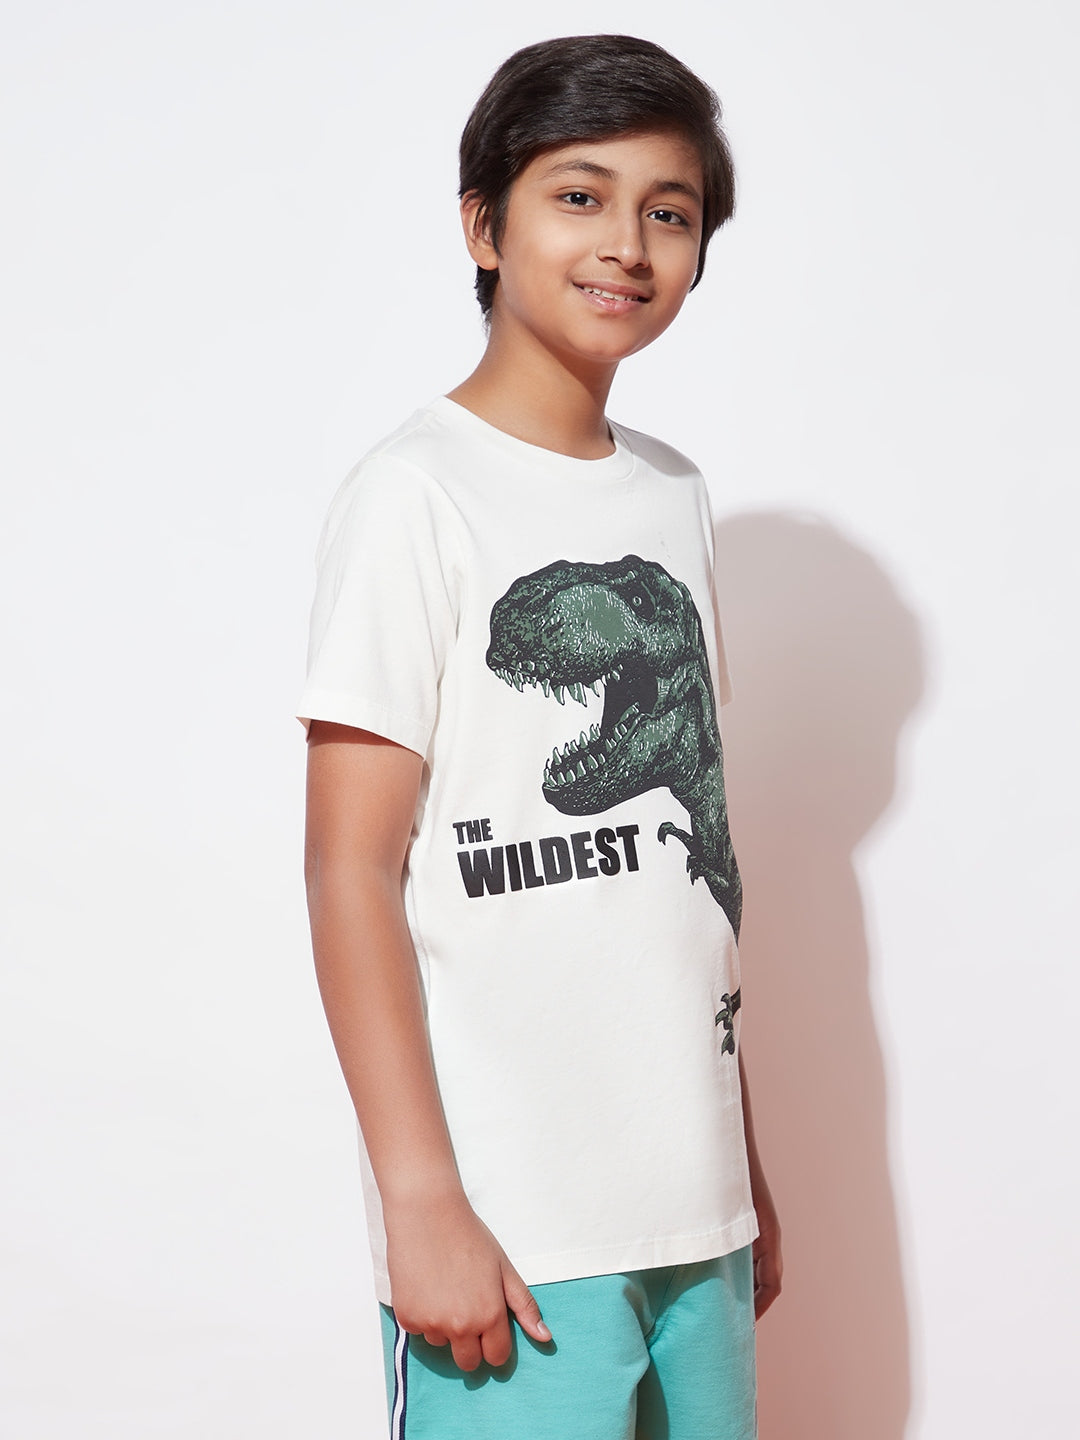 Dino High Tshirt For Boys